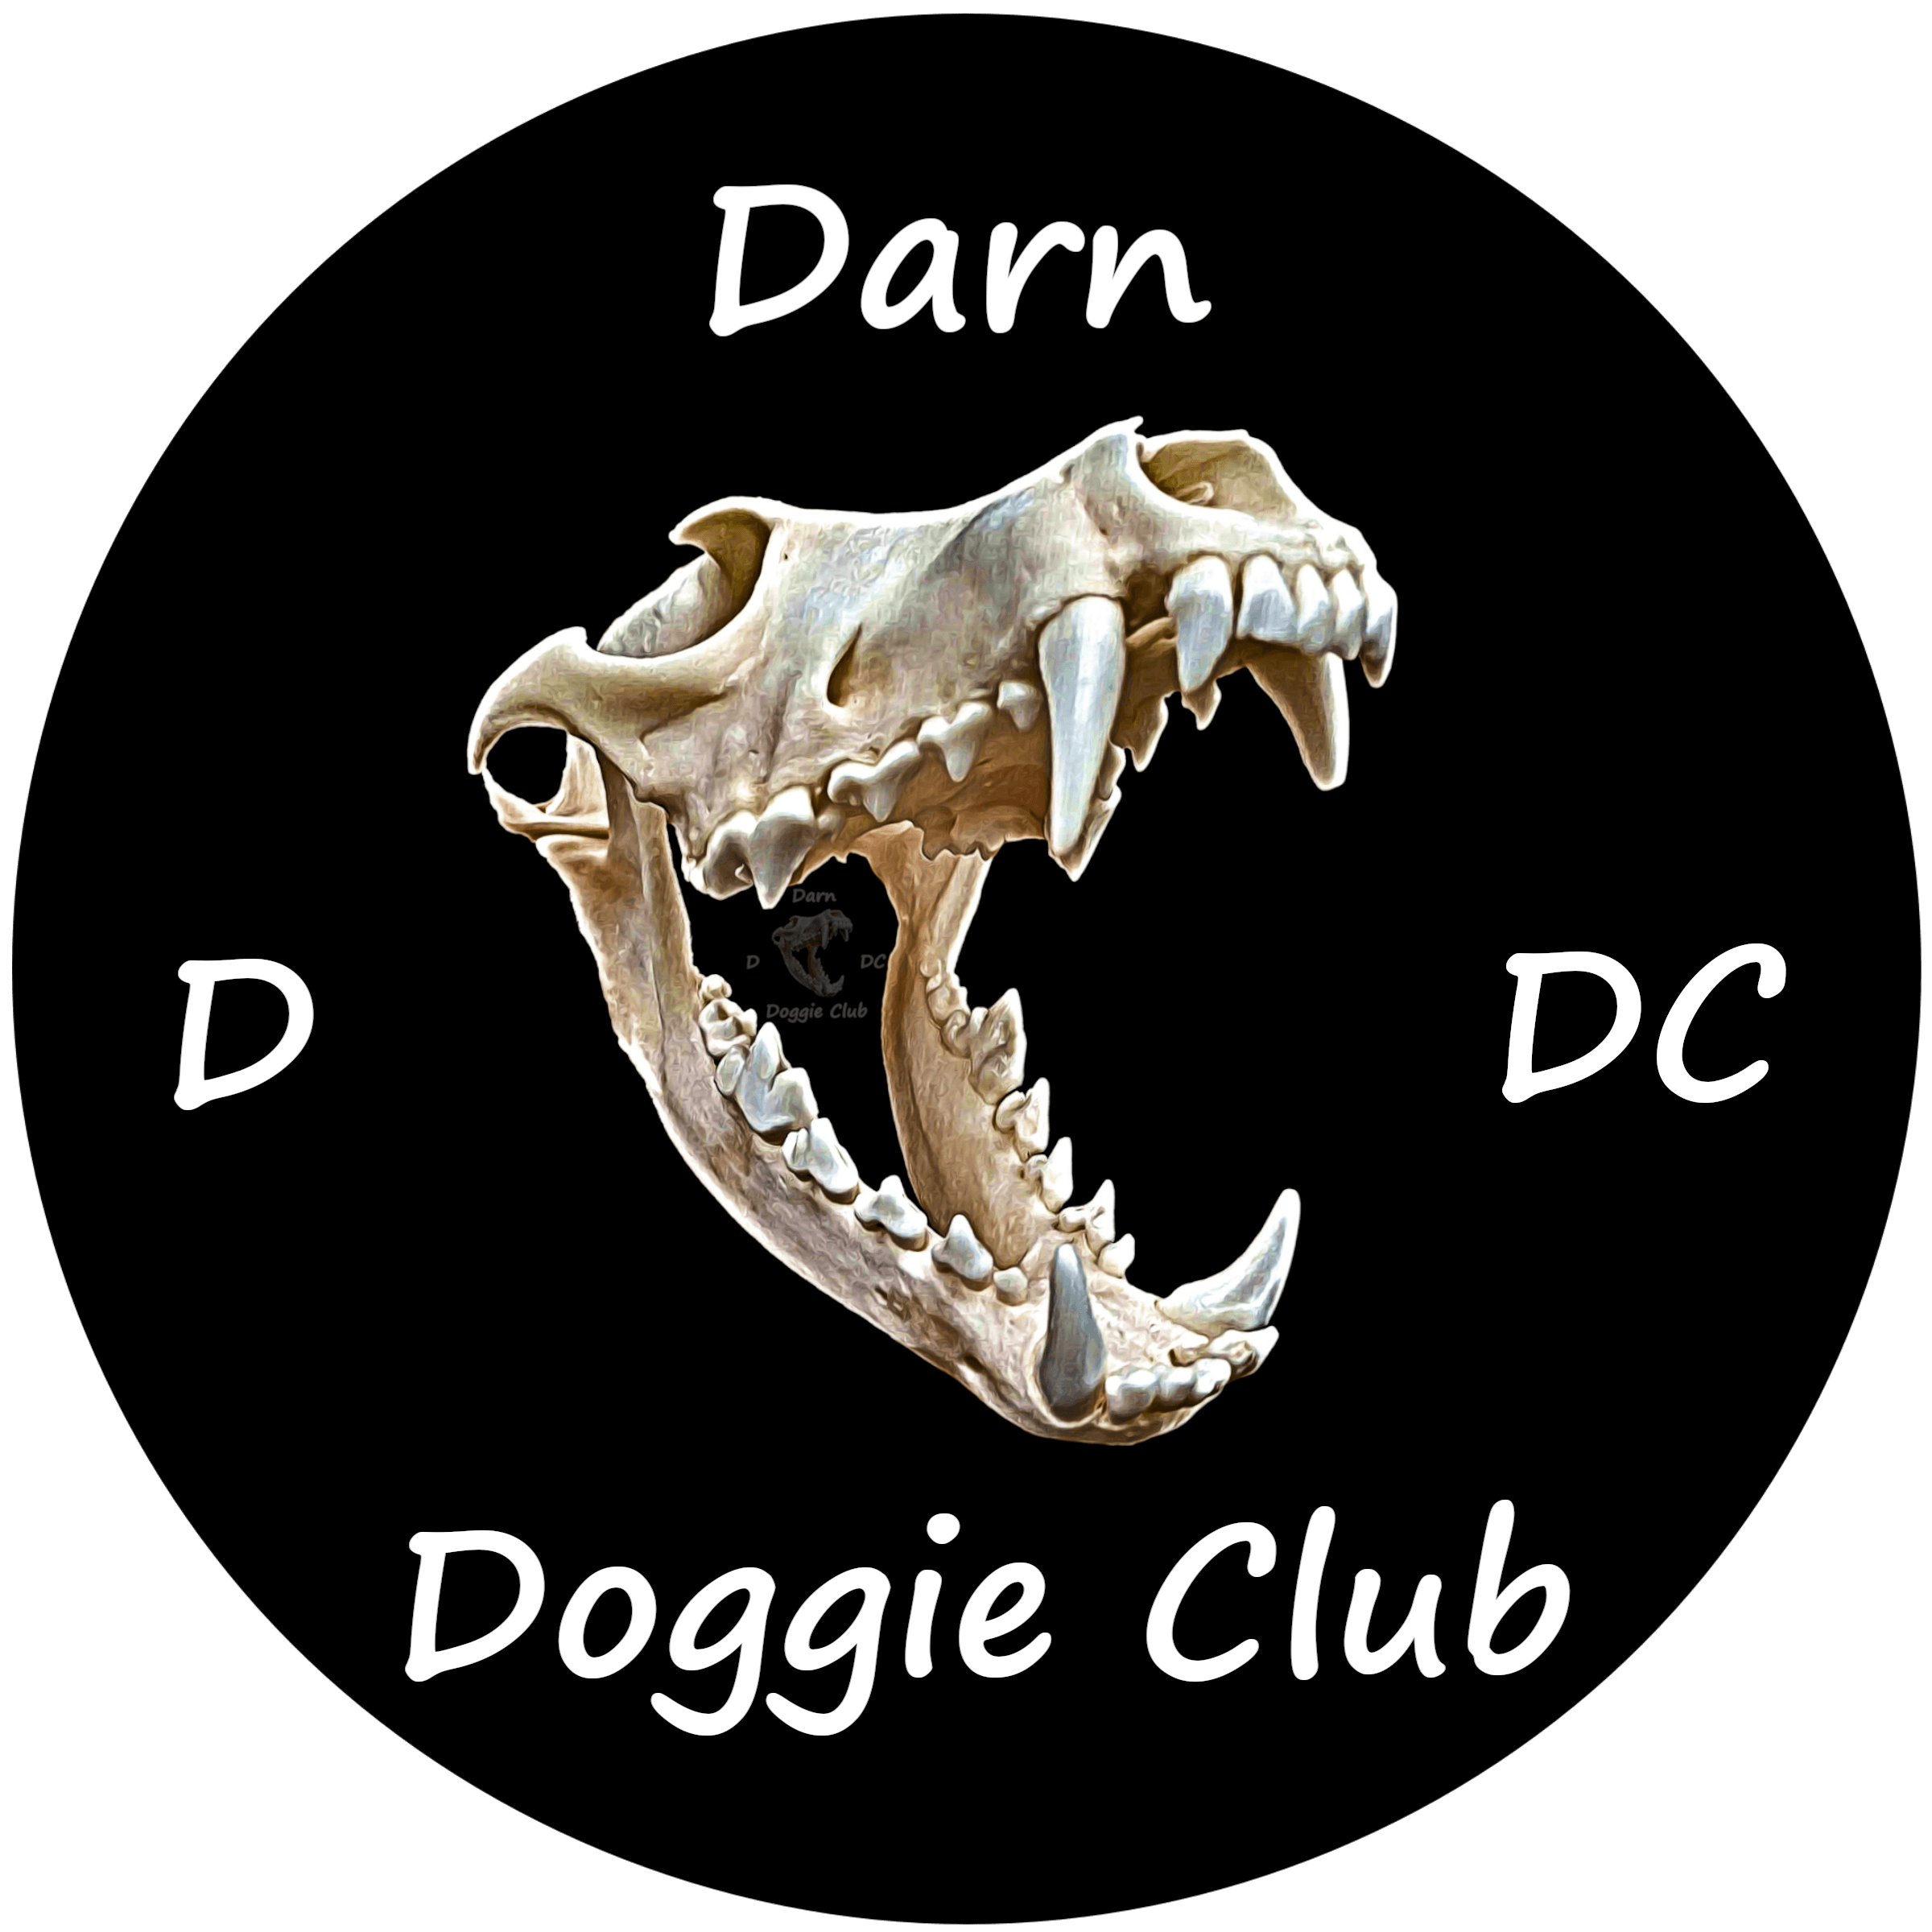 DarnDoggieClub